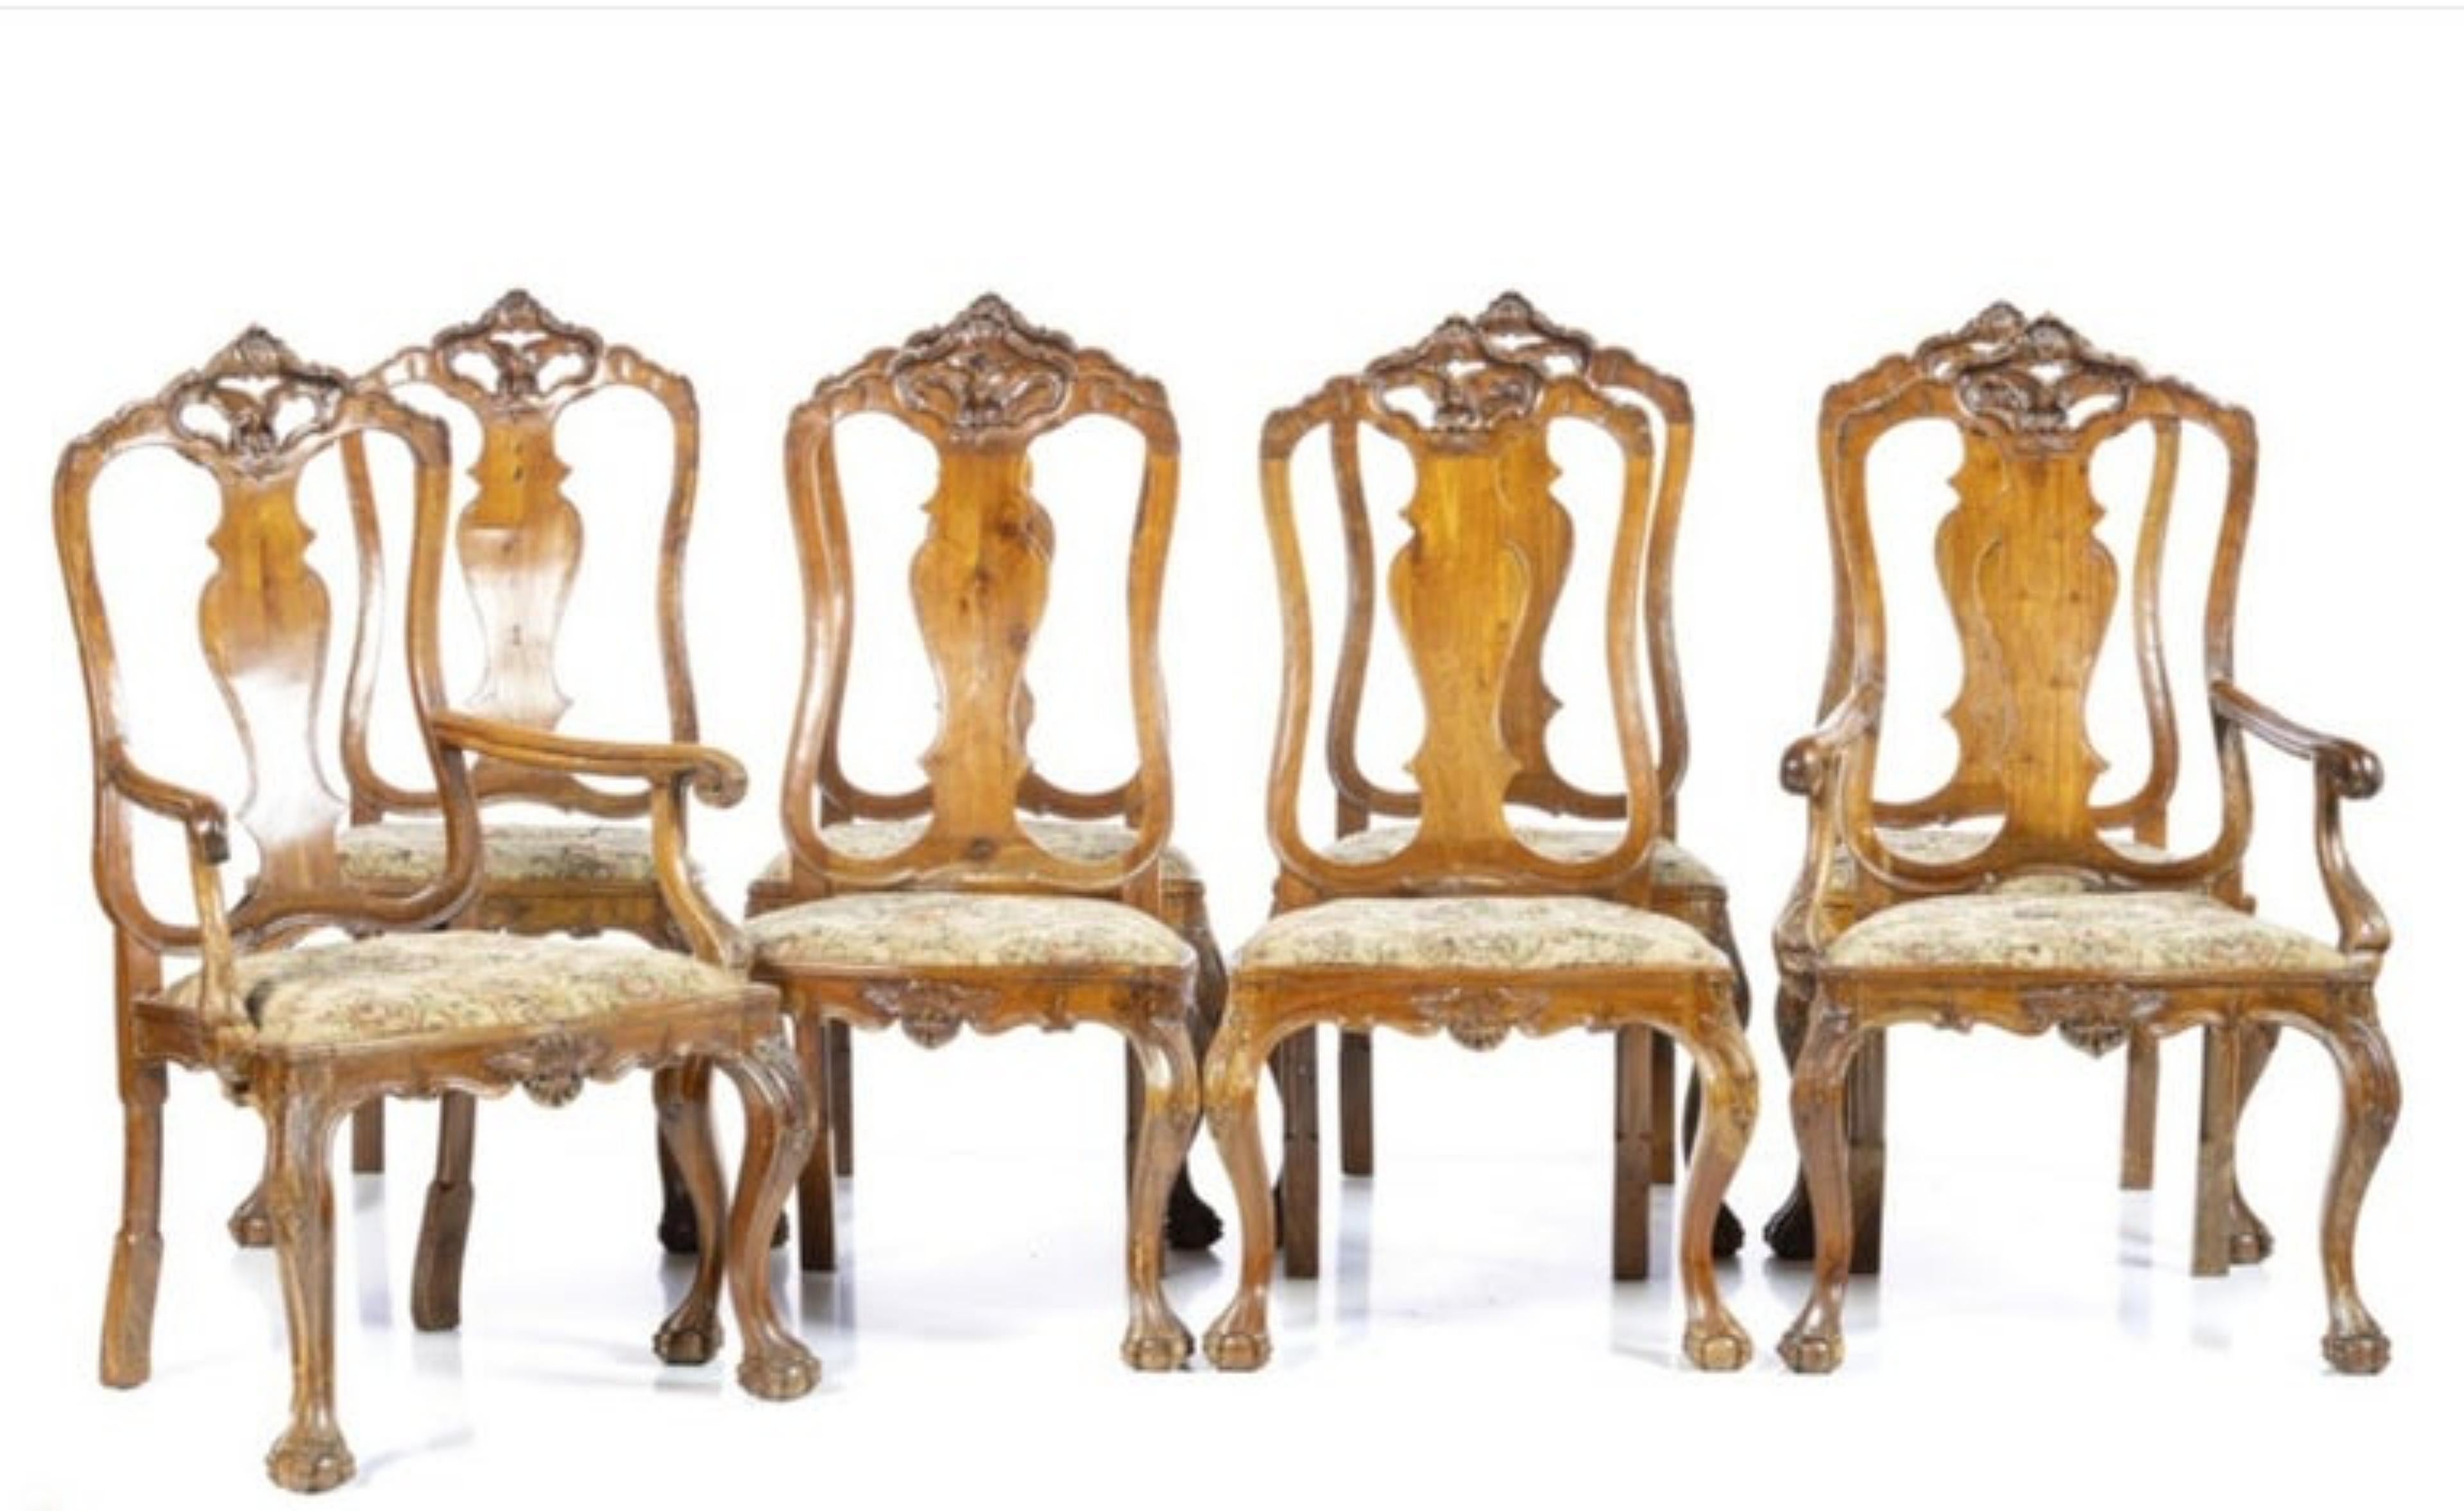 ENSEMBLE DE SIX CHAISES ET DEUX CHAISES

Portugais A.V.I.I., XVIIIe siècle
en bois de noyer sculpté.
Sièges rembourrés.
Dim. : (chaise) 110 x 64 x 49 cm
bonnes conditions.